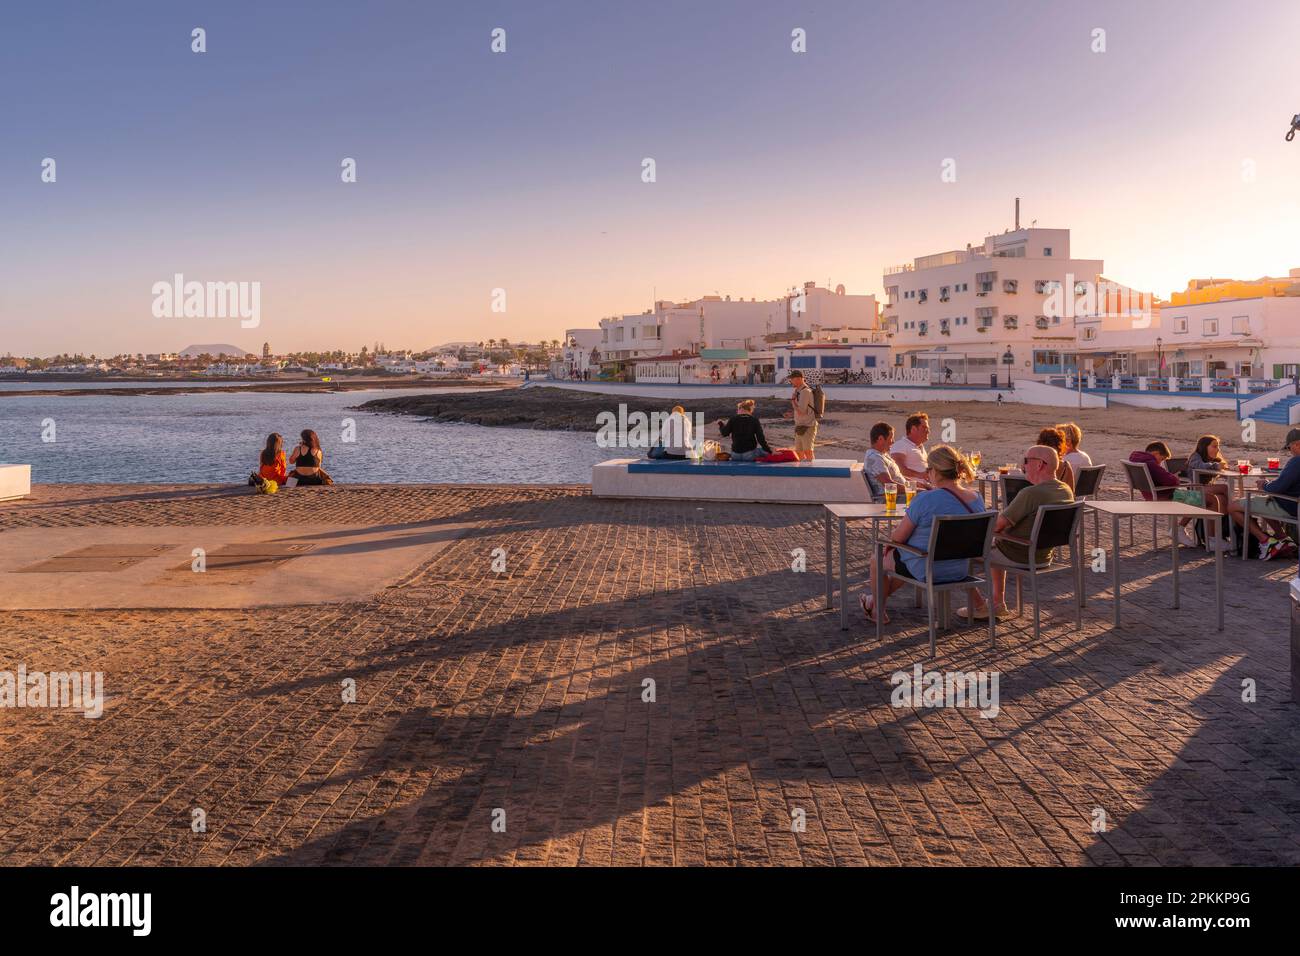 Blick auf den Strand und die Bars an einem sonnigen Tag, Corralejo, Fuerteventura, Kanarische Inseln, Spanien, Atlantik, Europa Stockfoto